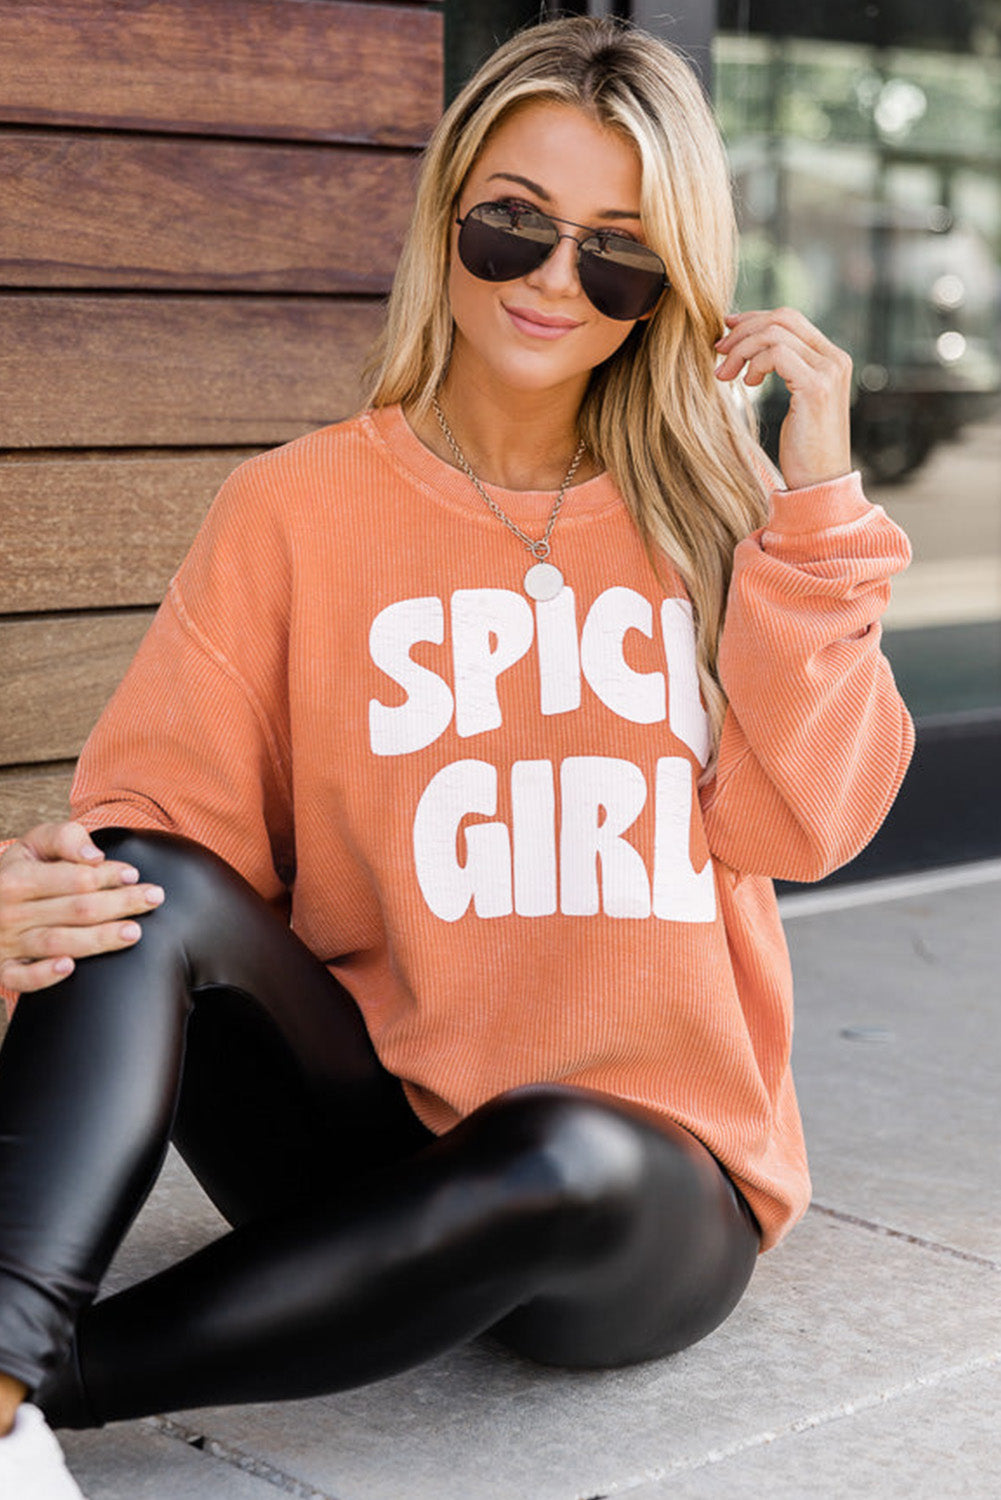 Narančasta majica s motivom SPICY GIRL s žicom